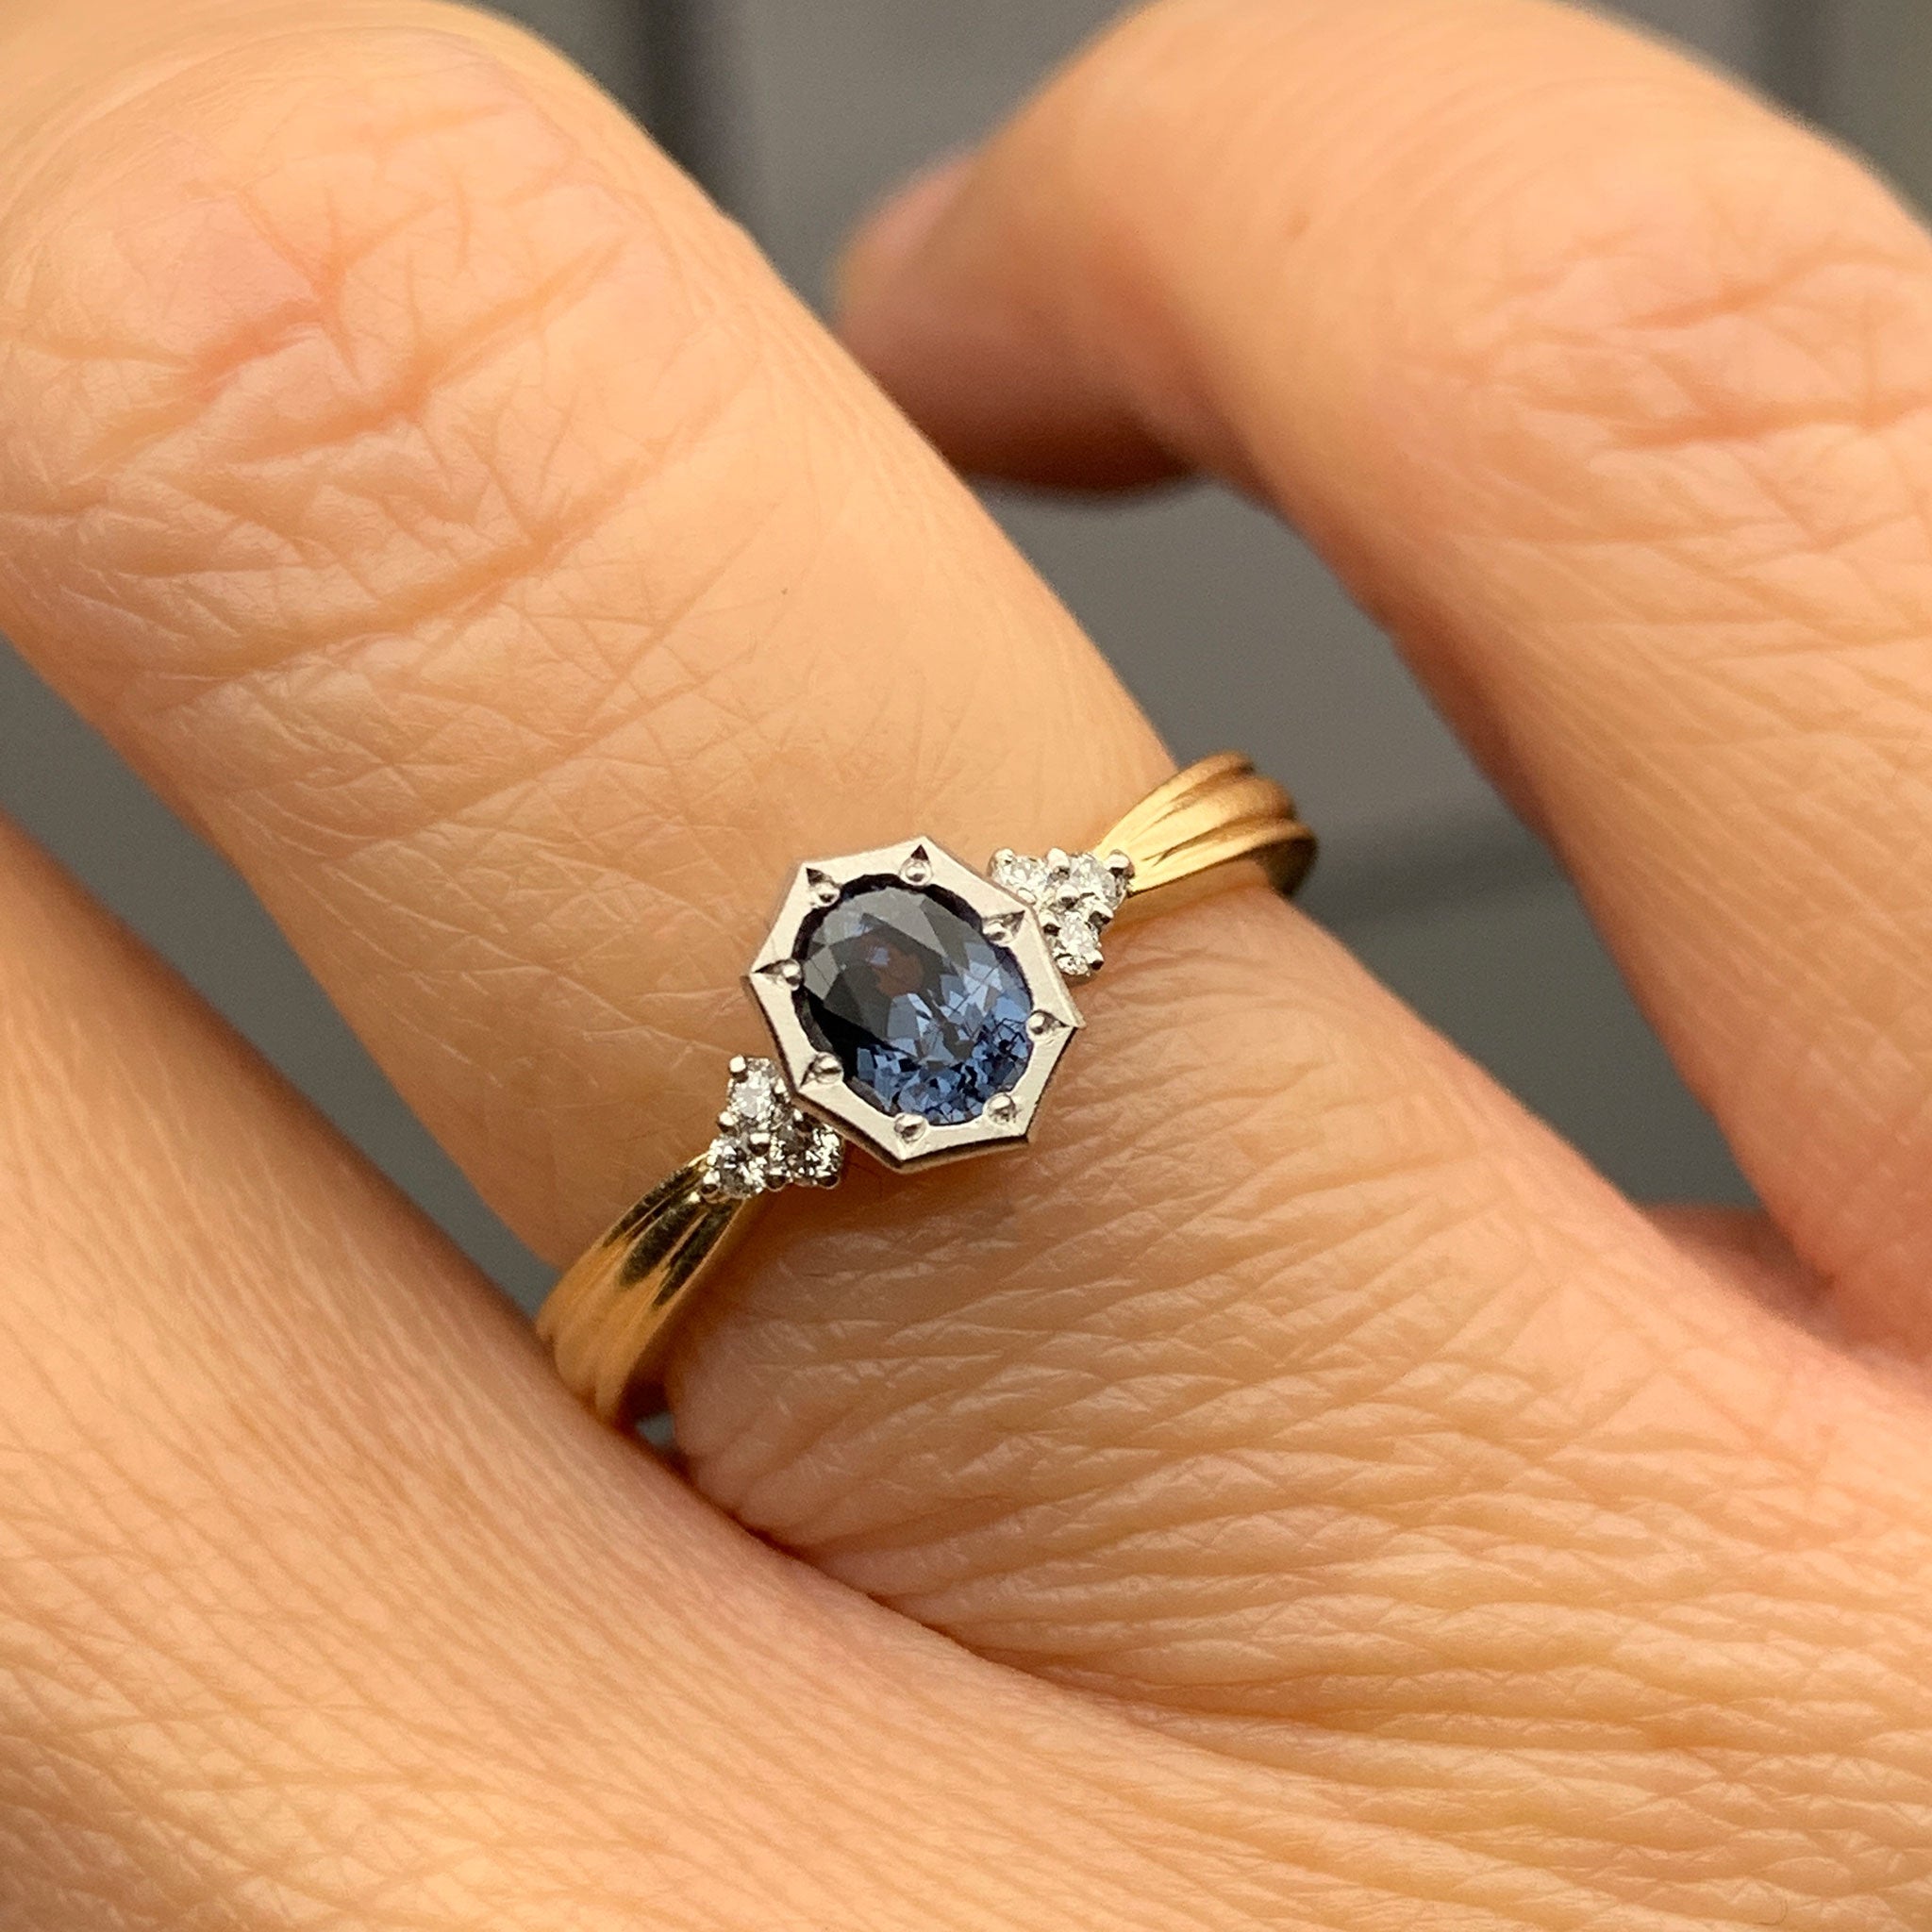 graceline bekily blue garnet ring / ベキリーブルーガーネットリング